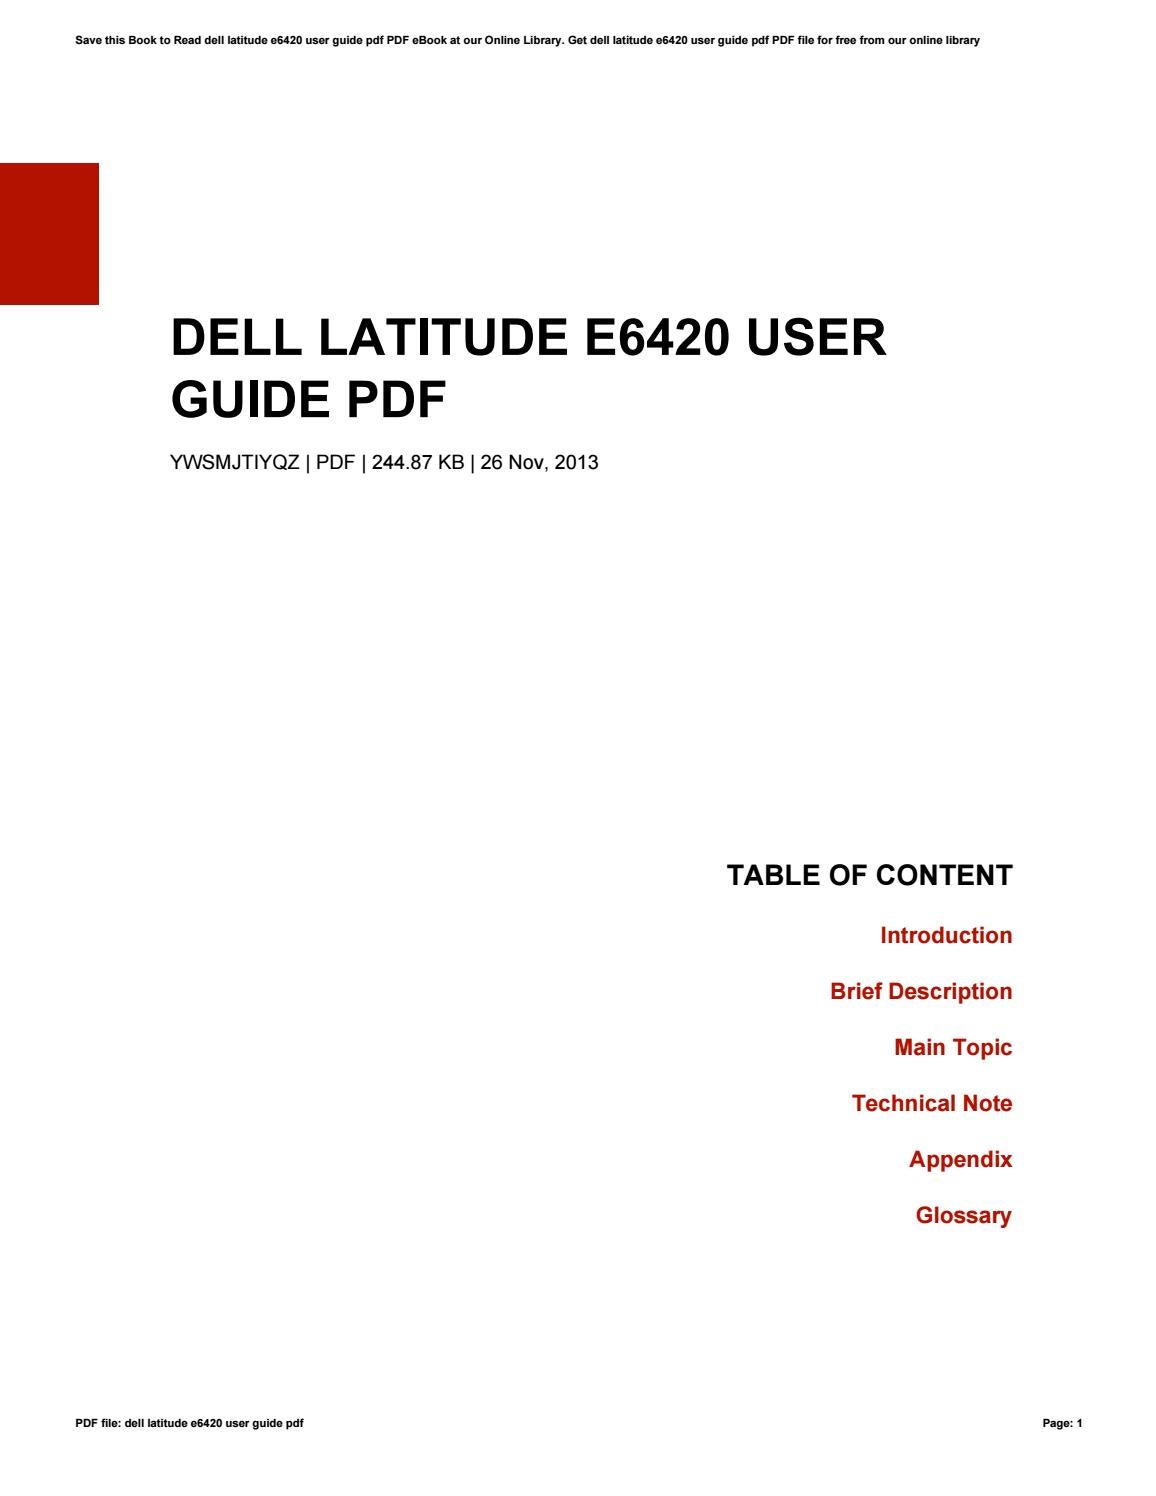 Dell latitude e6420 user manual